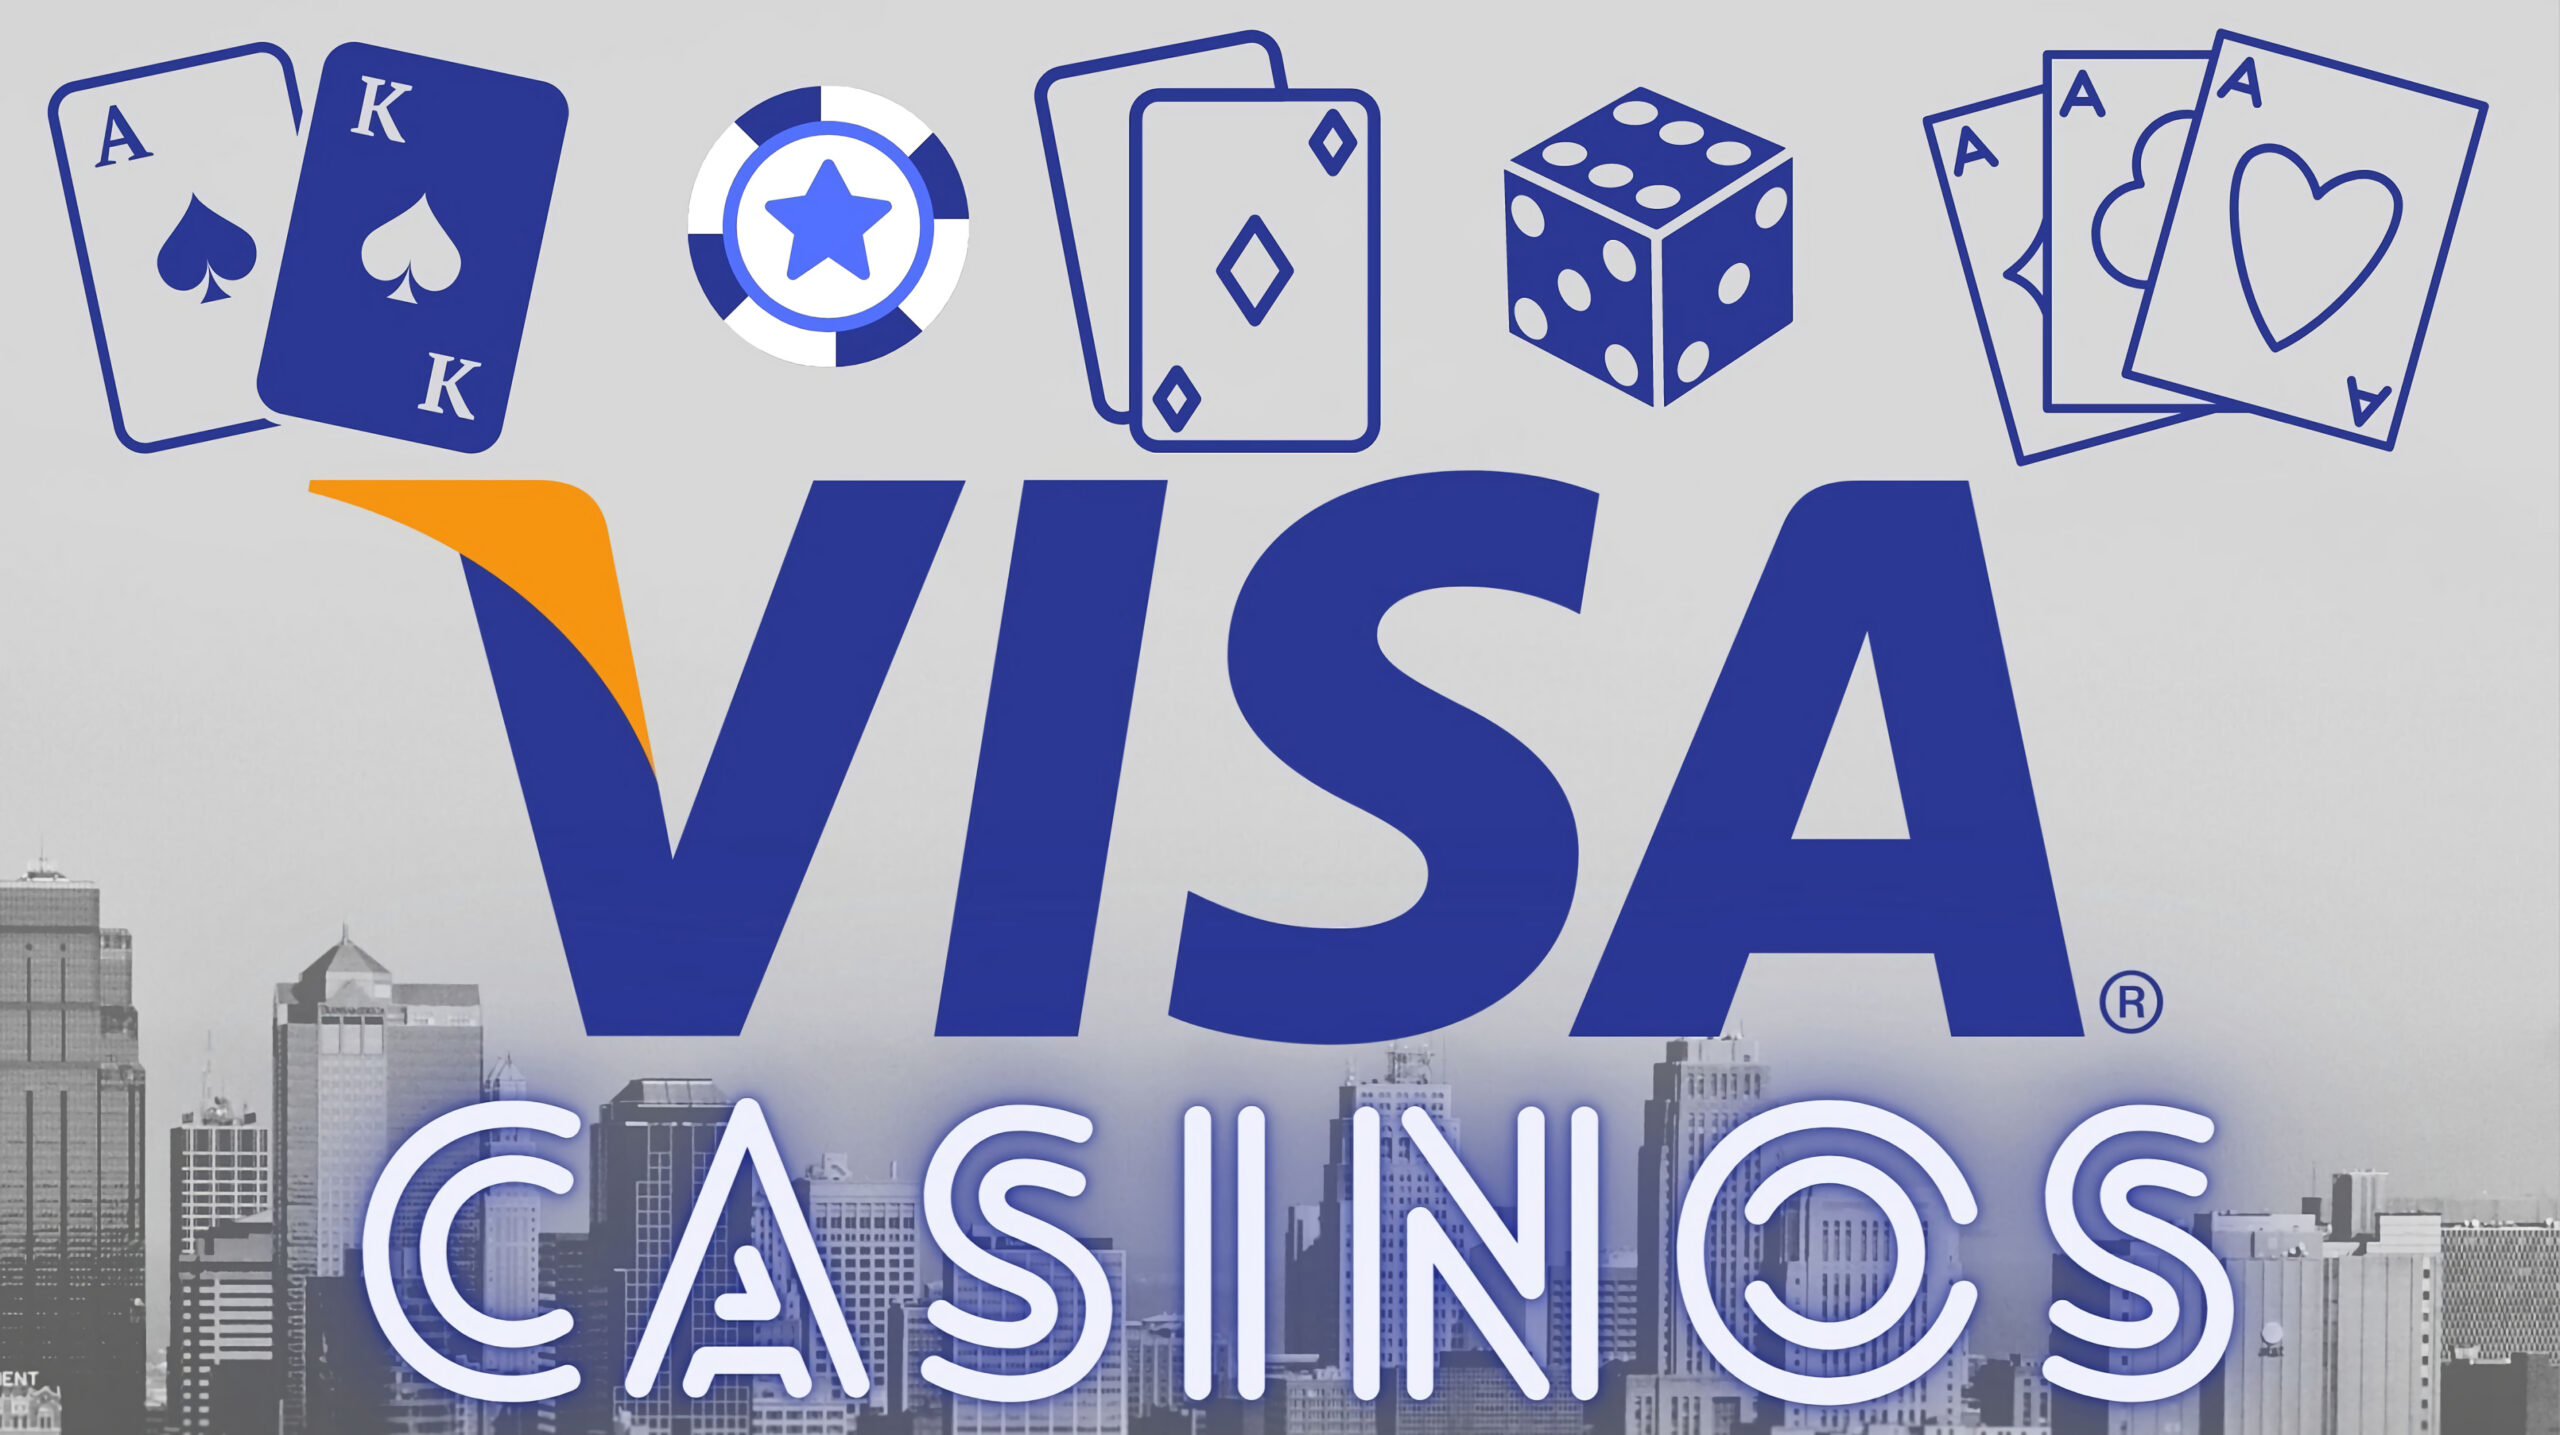 Casinos mit Visa. Online casinos mit visa karte